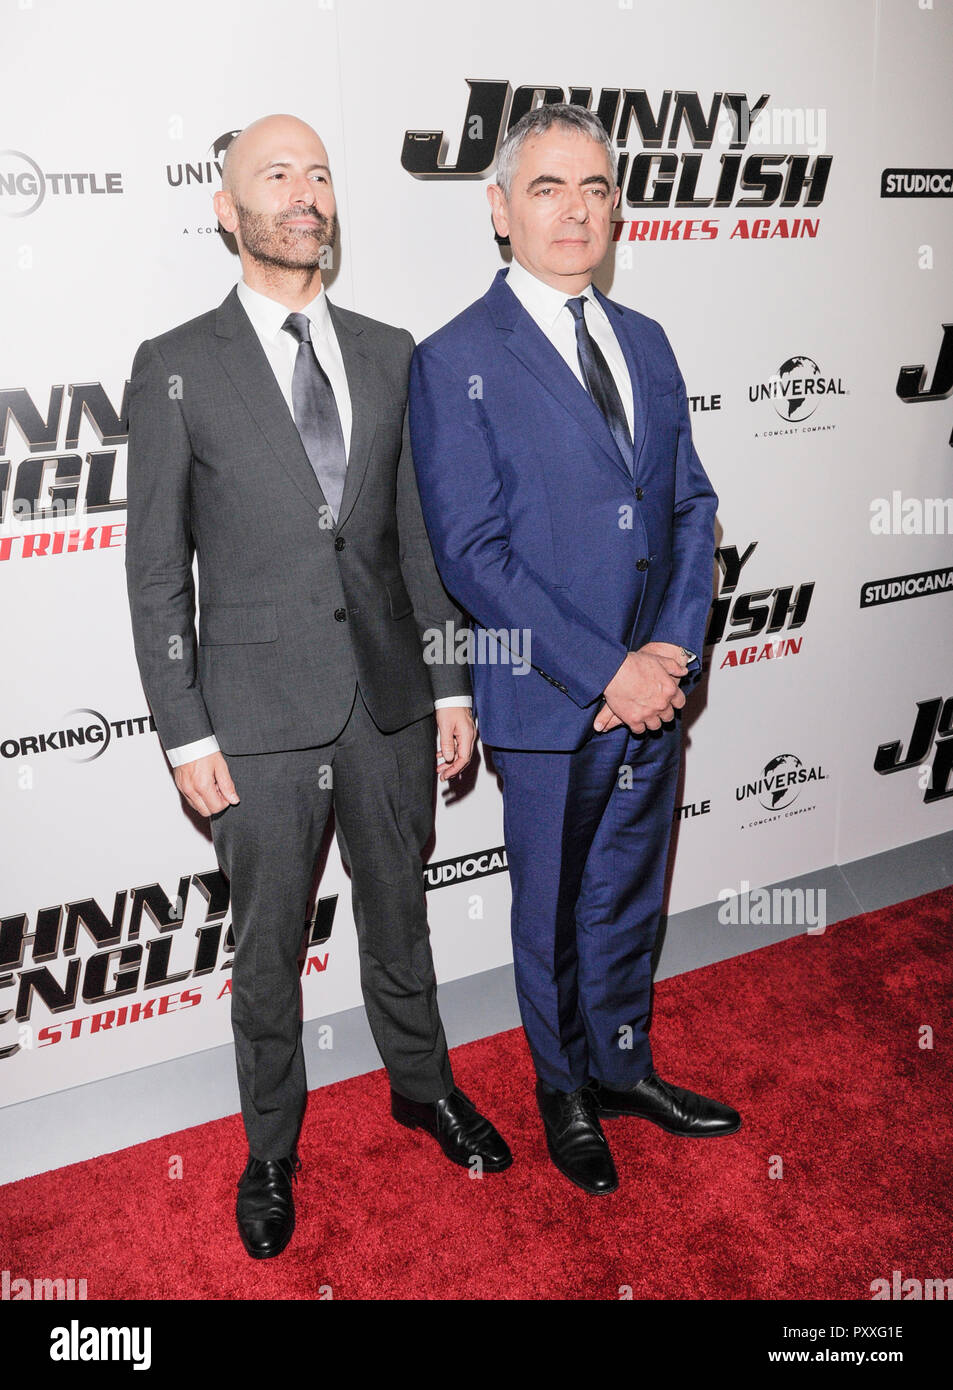 New York, NY - Ottobre 23, 2018: David Kerr e Rowan Atkinson frequentare il Johnny inglese colpisce ancora lo screening a AMC Lincoln Square Theatre Foto Stock